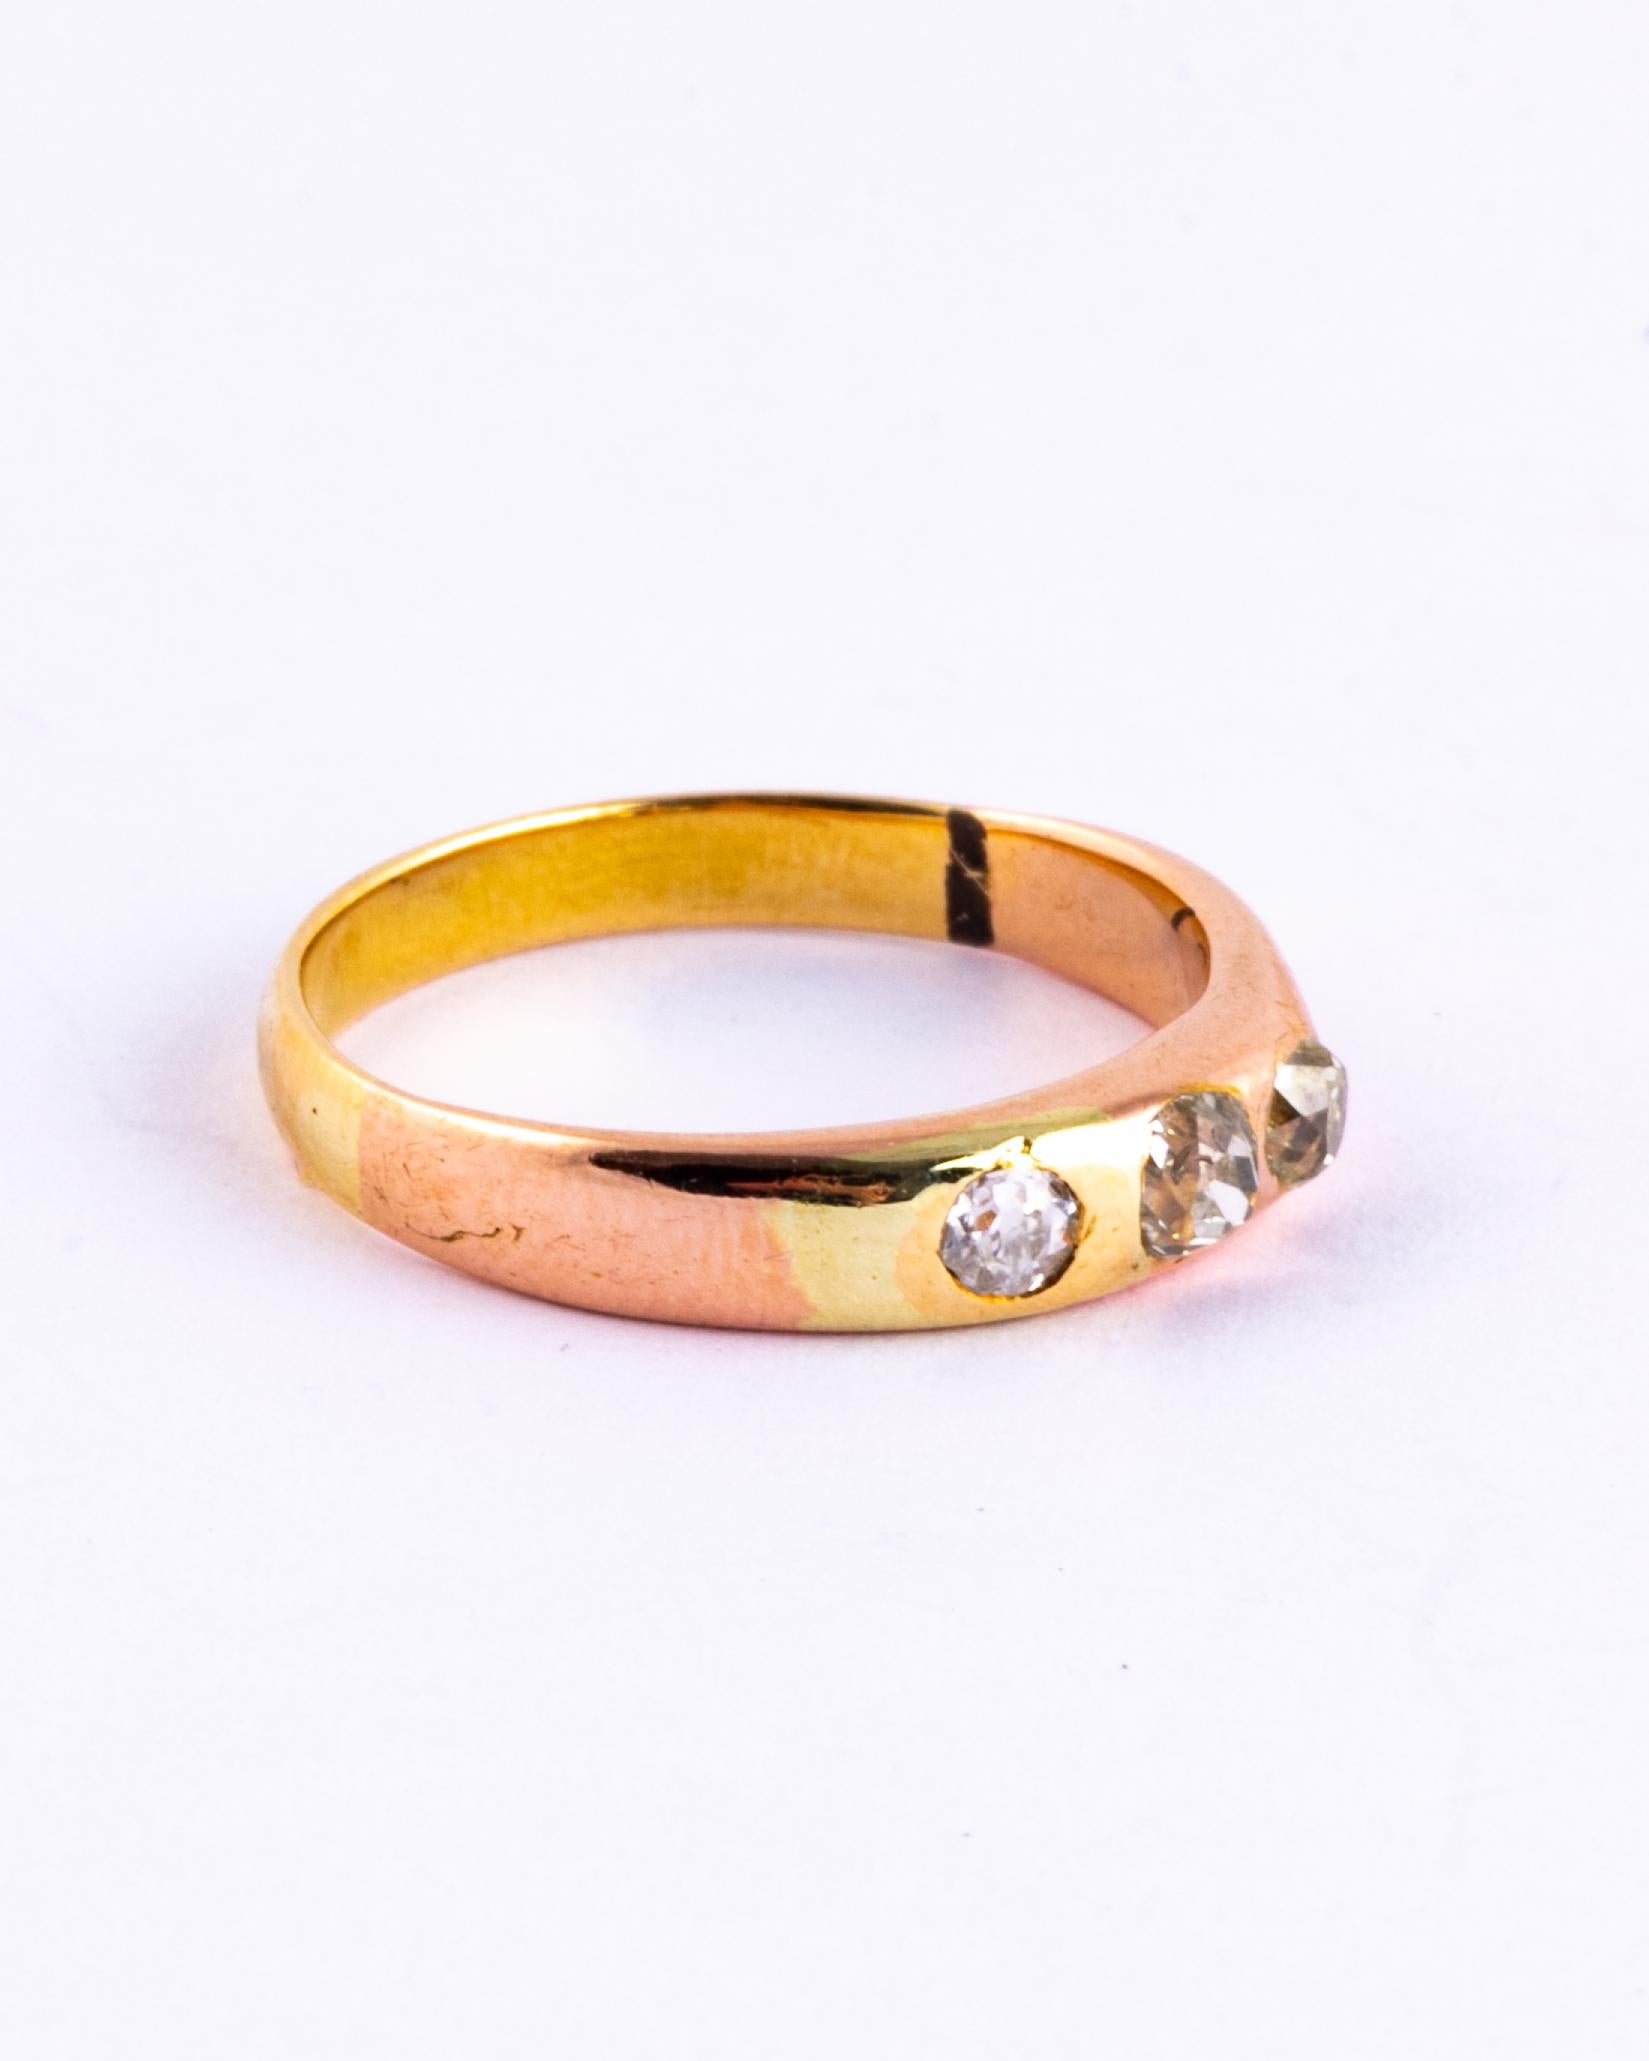 Au centre de ce bracelet en or simple se trouvent trois diamants d'une valeur totale de 35pts. Les diamants sont taillés à l'ancienne et présentent un magnifique éclat. 

Taille de l'anneau : I.L.A. ou 6 
Largeur de la bande : 4mm

Poids : 2,9 g